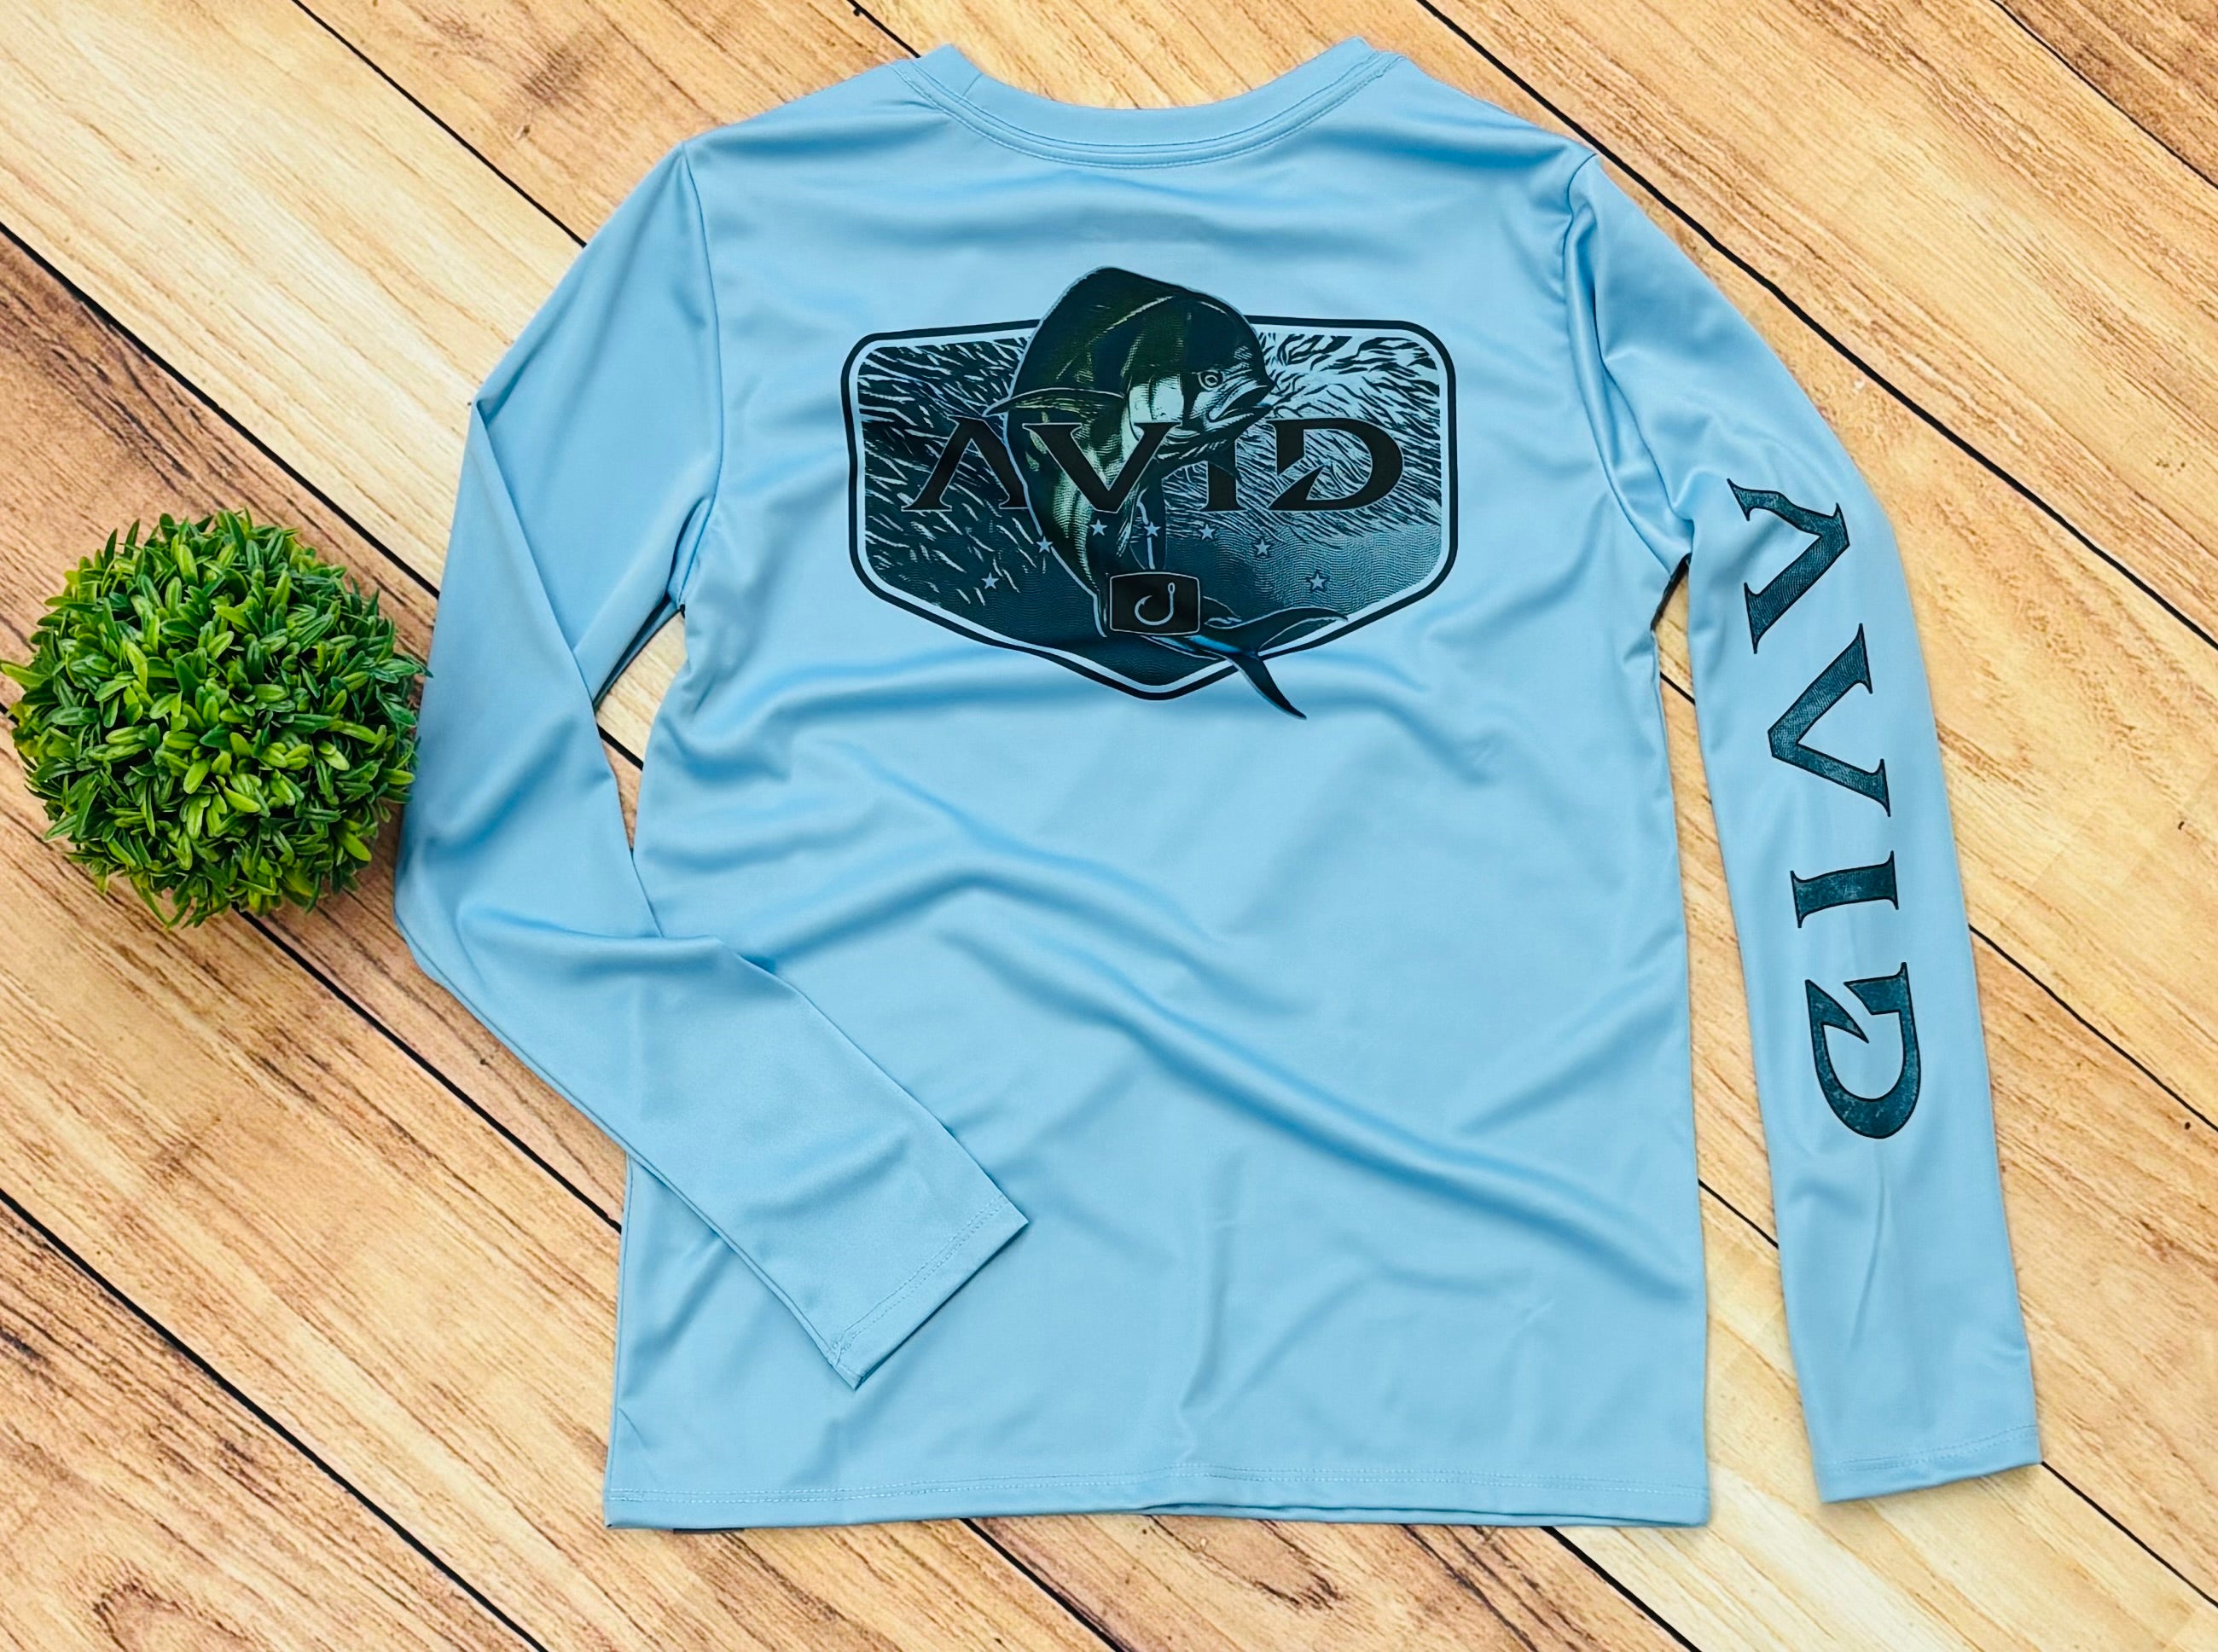 AVID Sportswear – American Aquatic